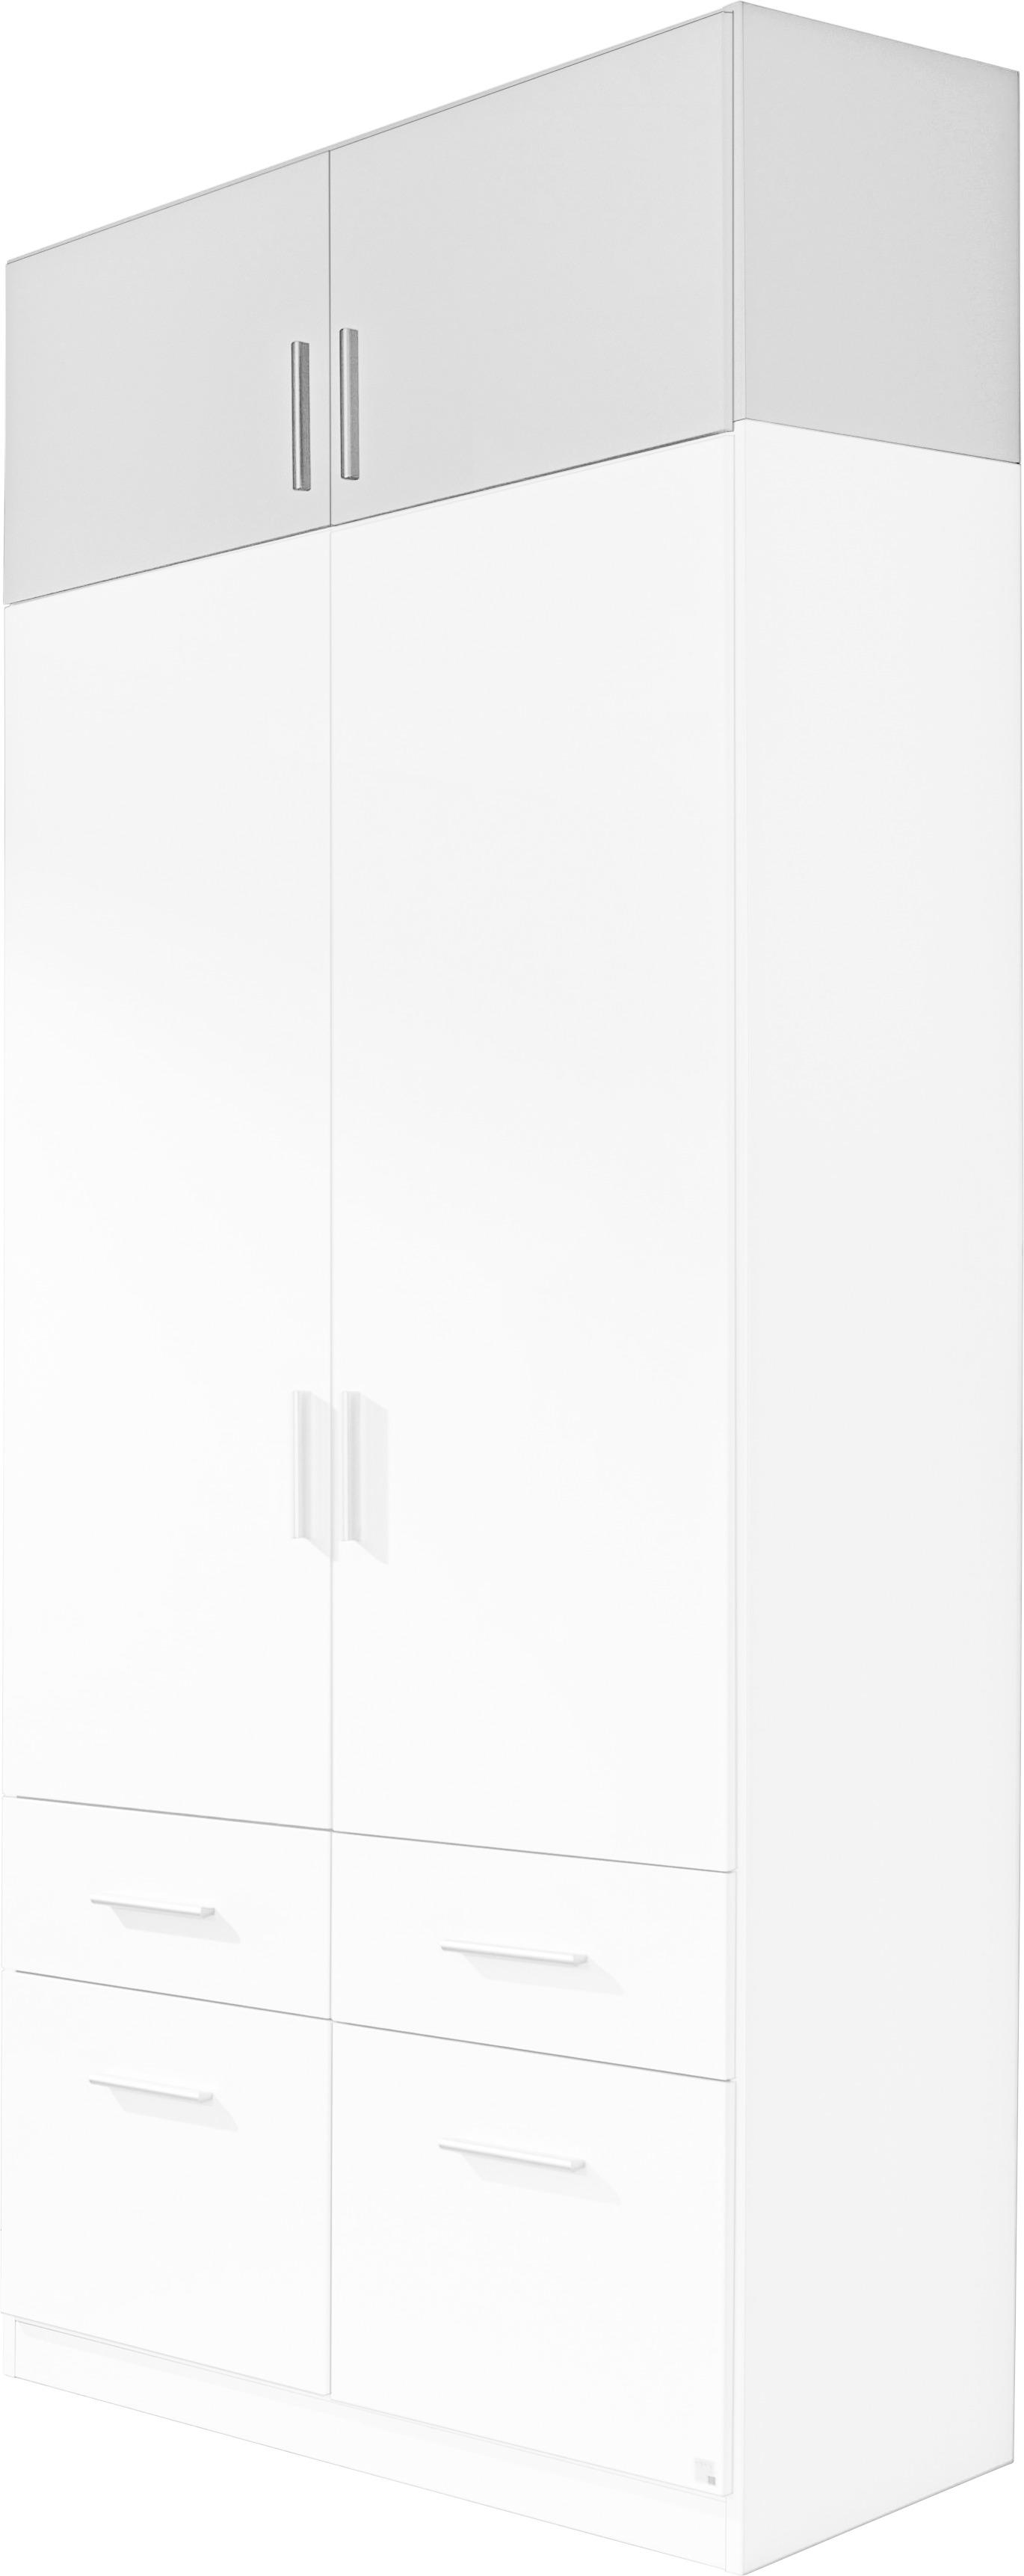 Aufsatzschrank 91cm Celle, Weiß - Weiß, MODERN, Holz (91/40/54cm)